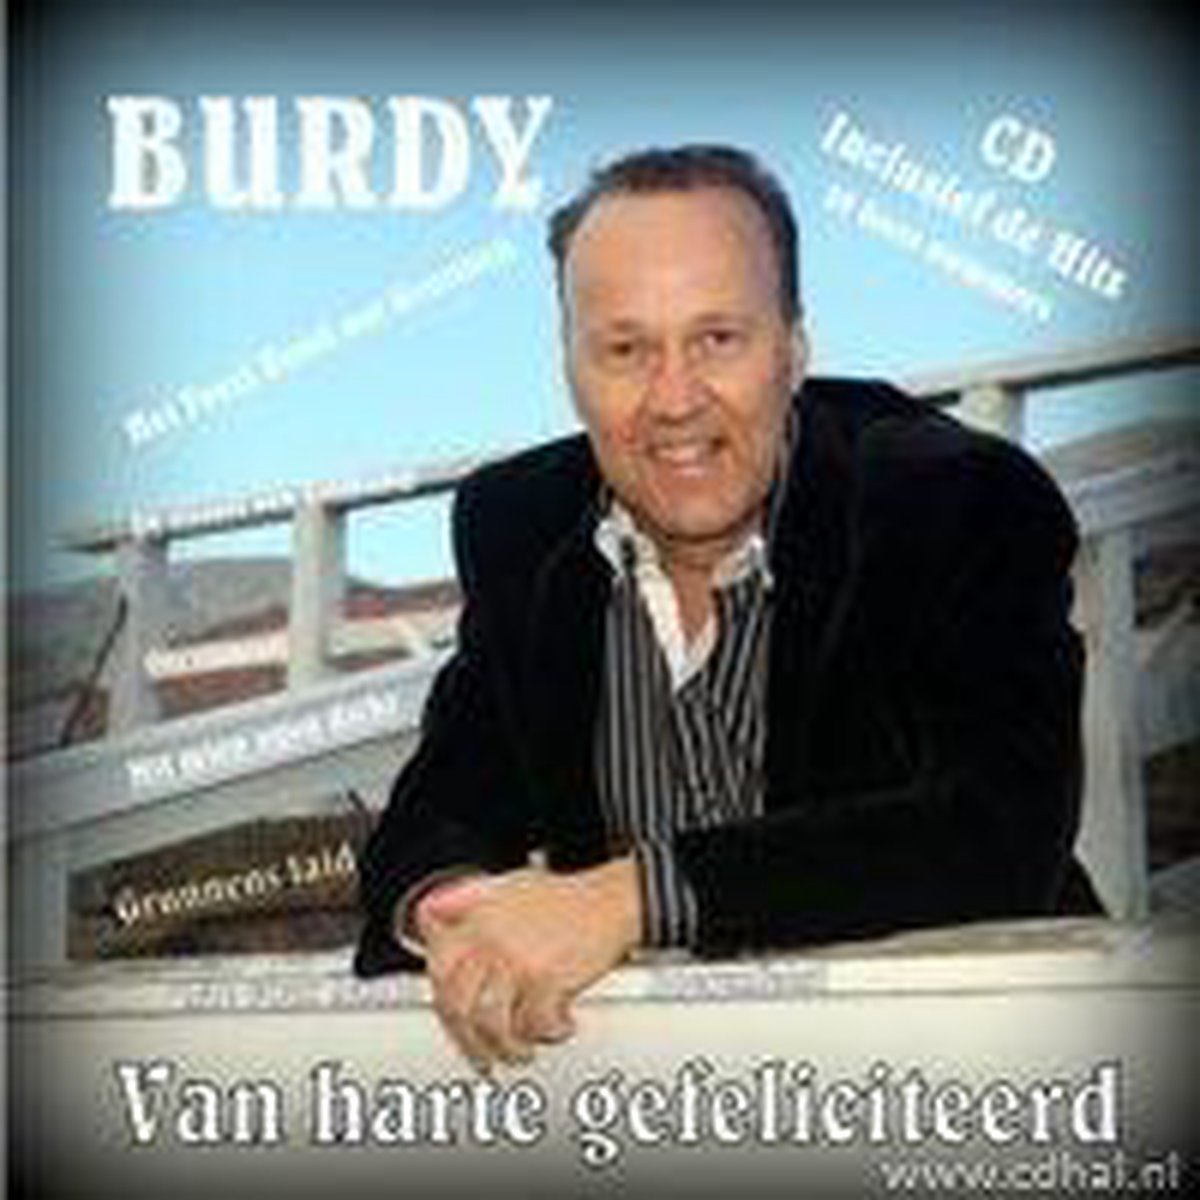 Van Harte Gefeliciteerd - Burdy